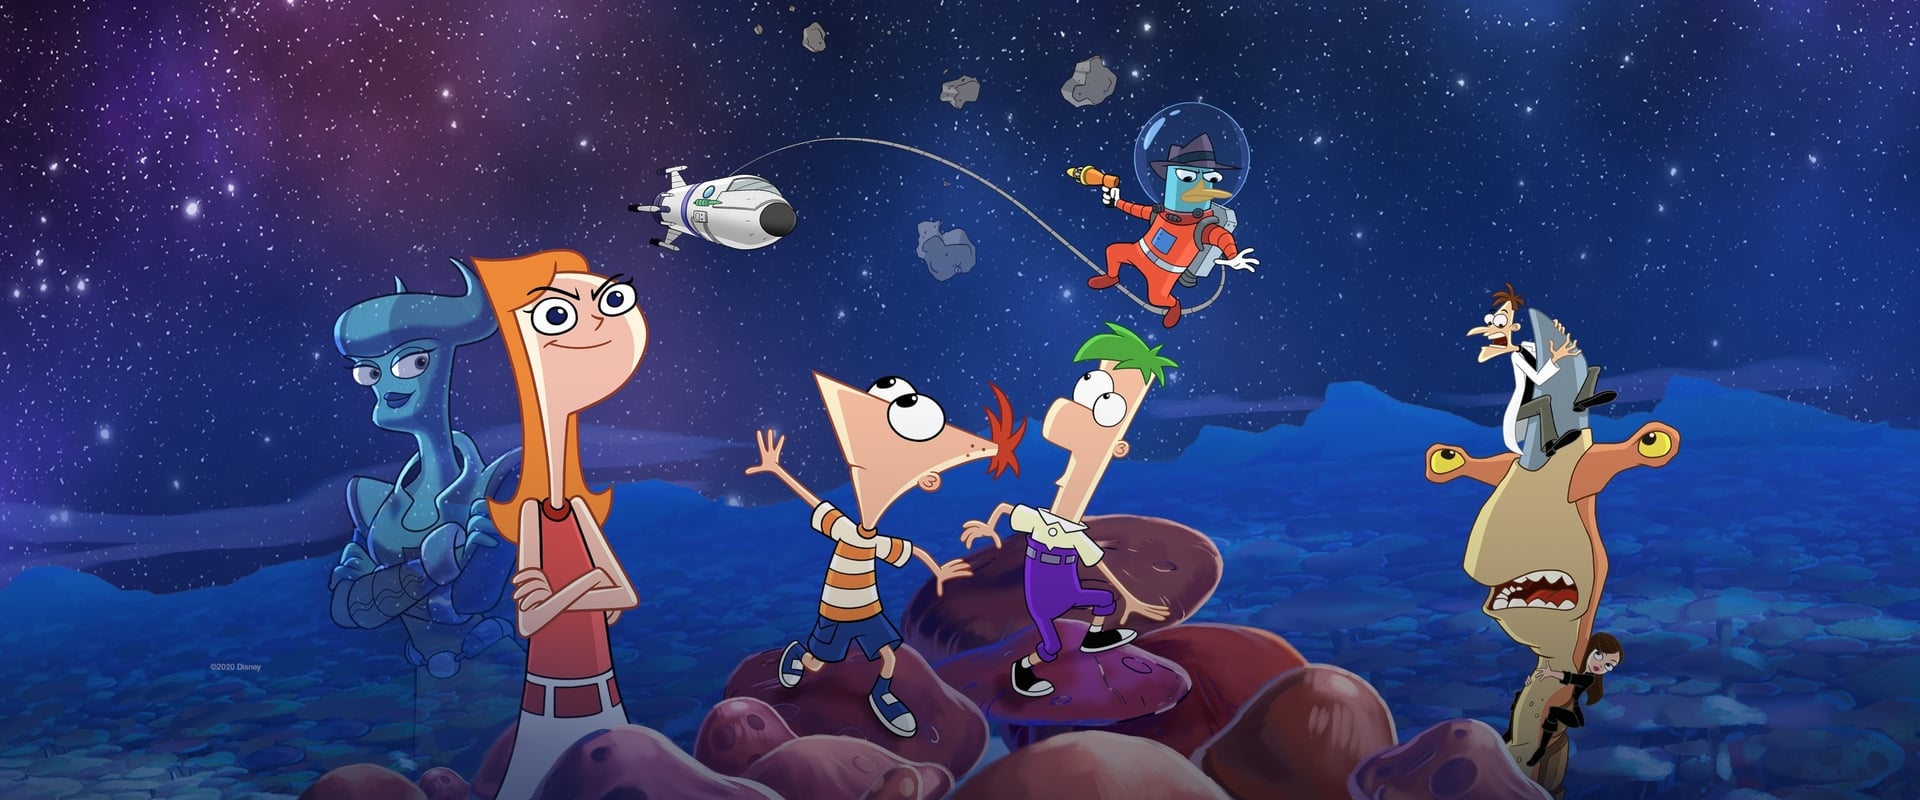 Phineas et Ferb, le film : Candice face à l’univers